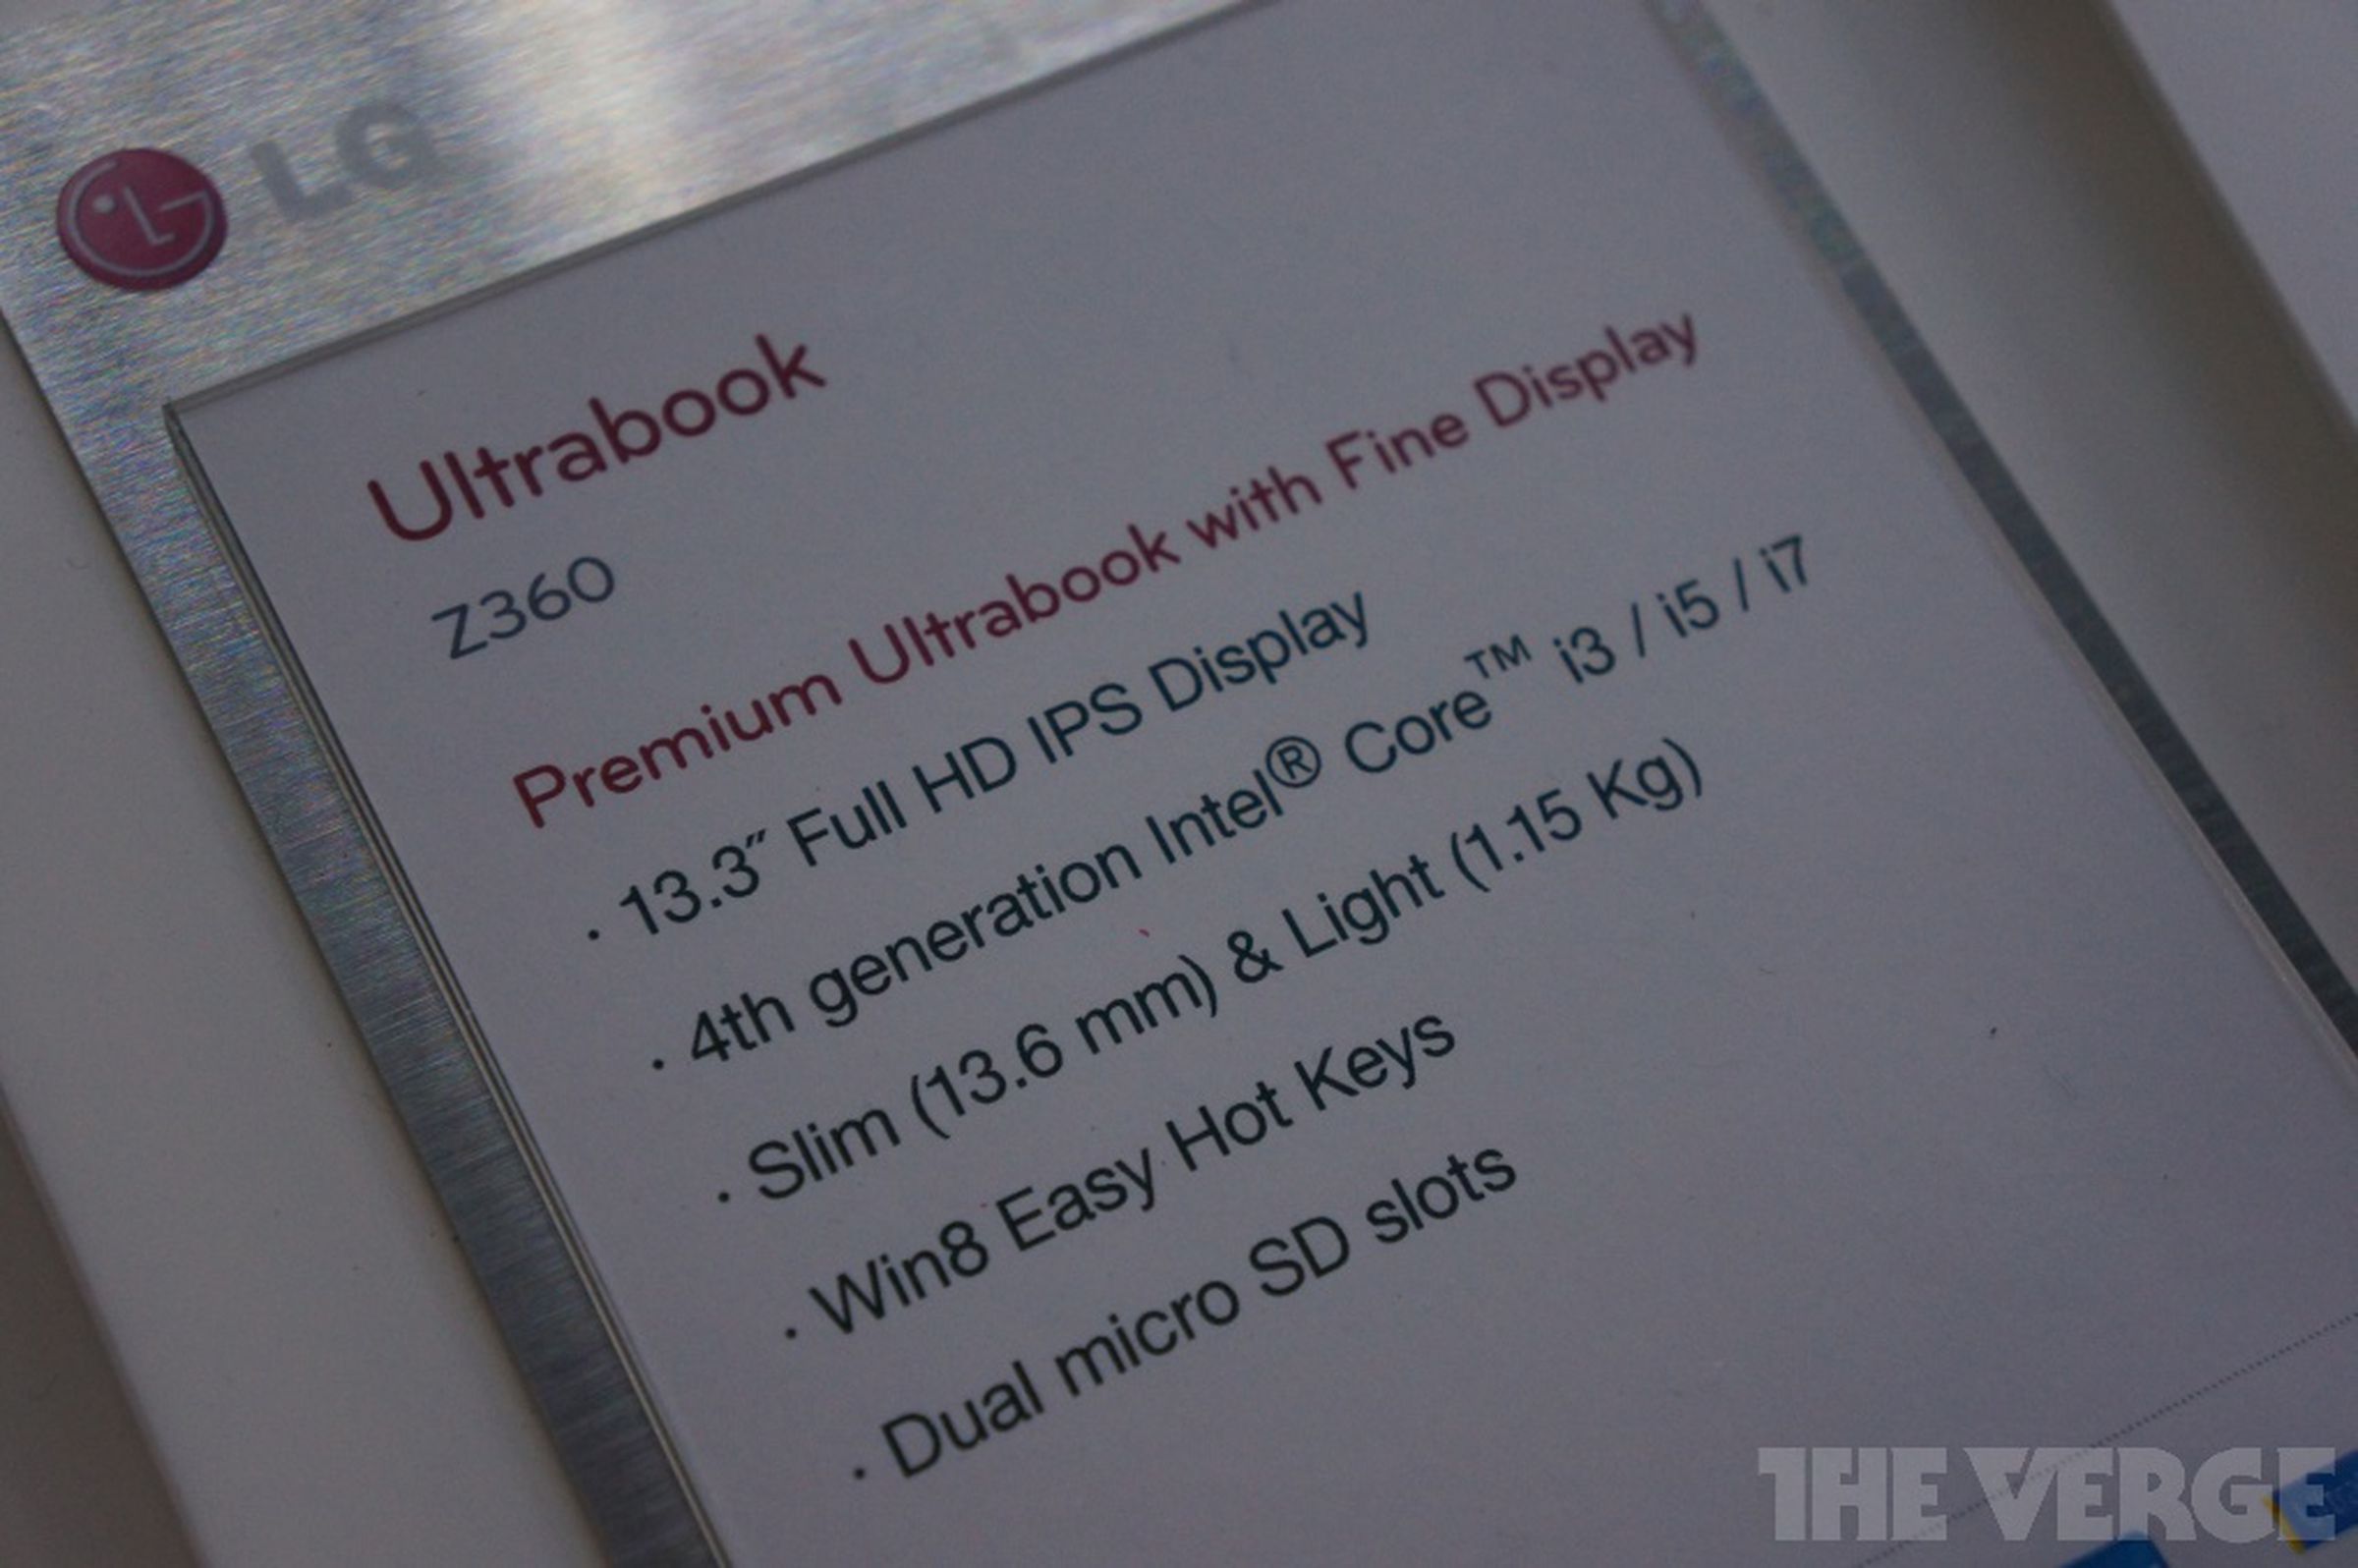 LG Z360 ultrabook hands-on photos